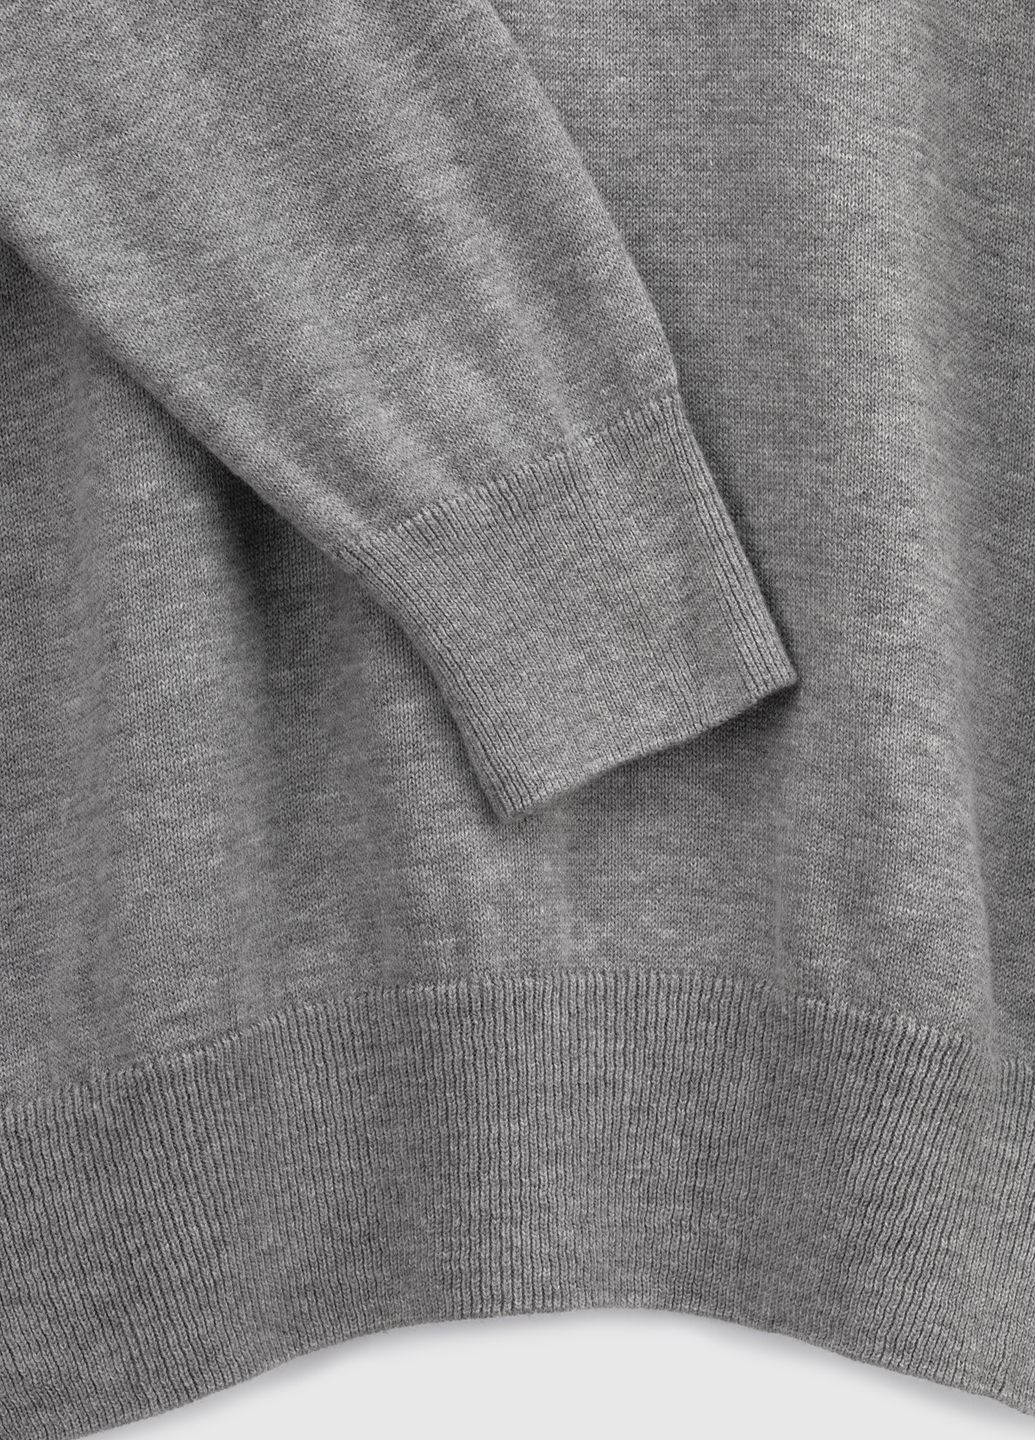 Светло-серый демисезонный пуловер Figo